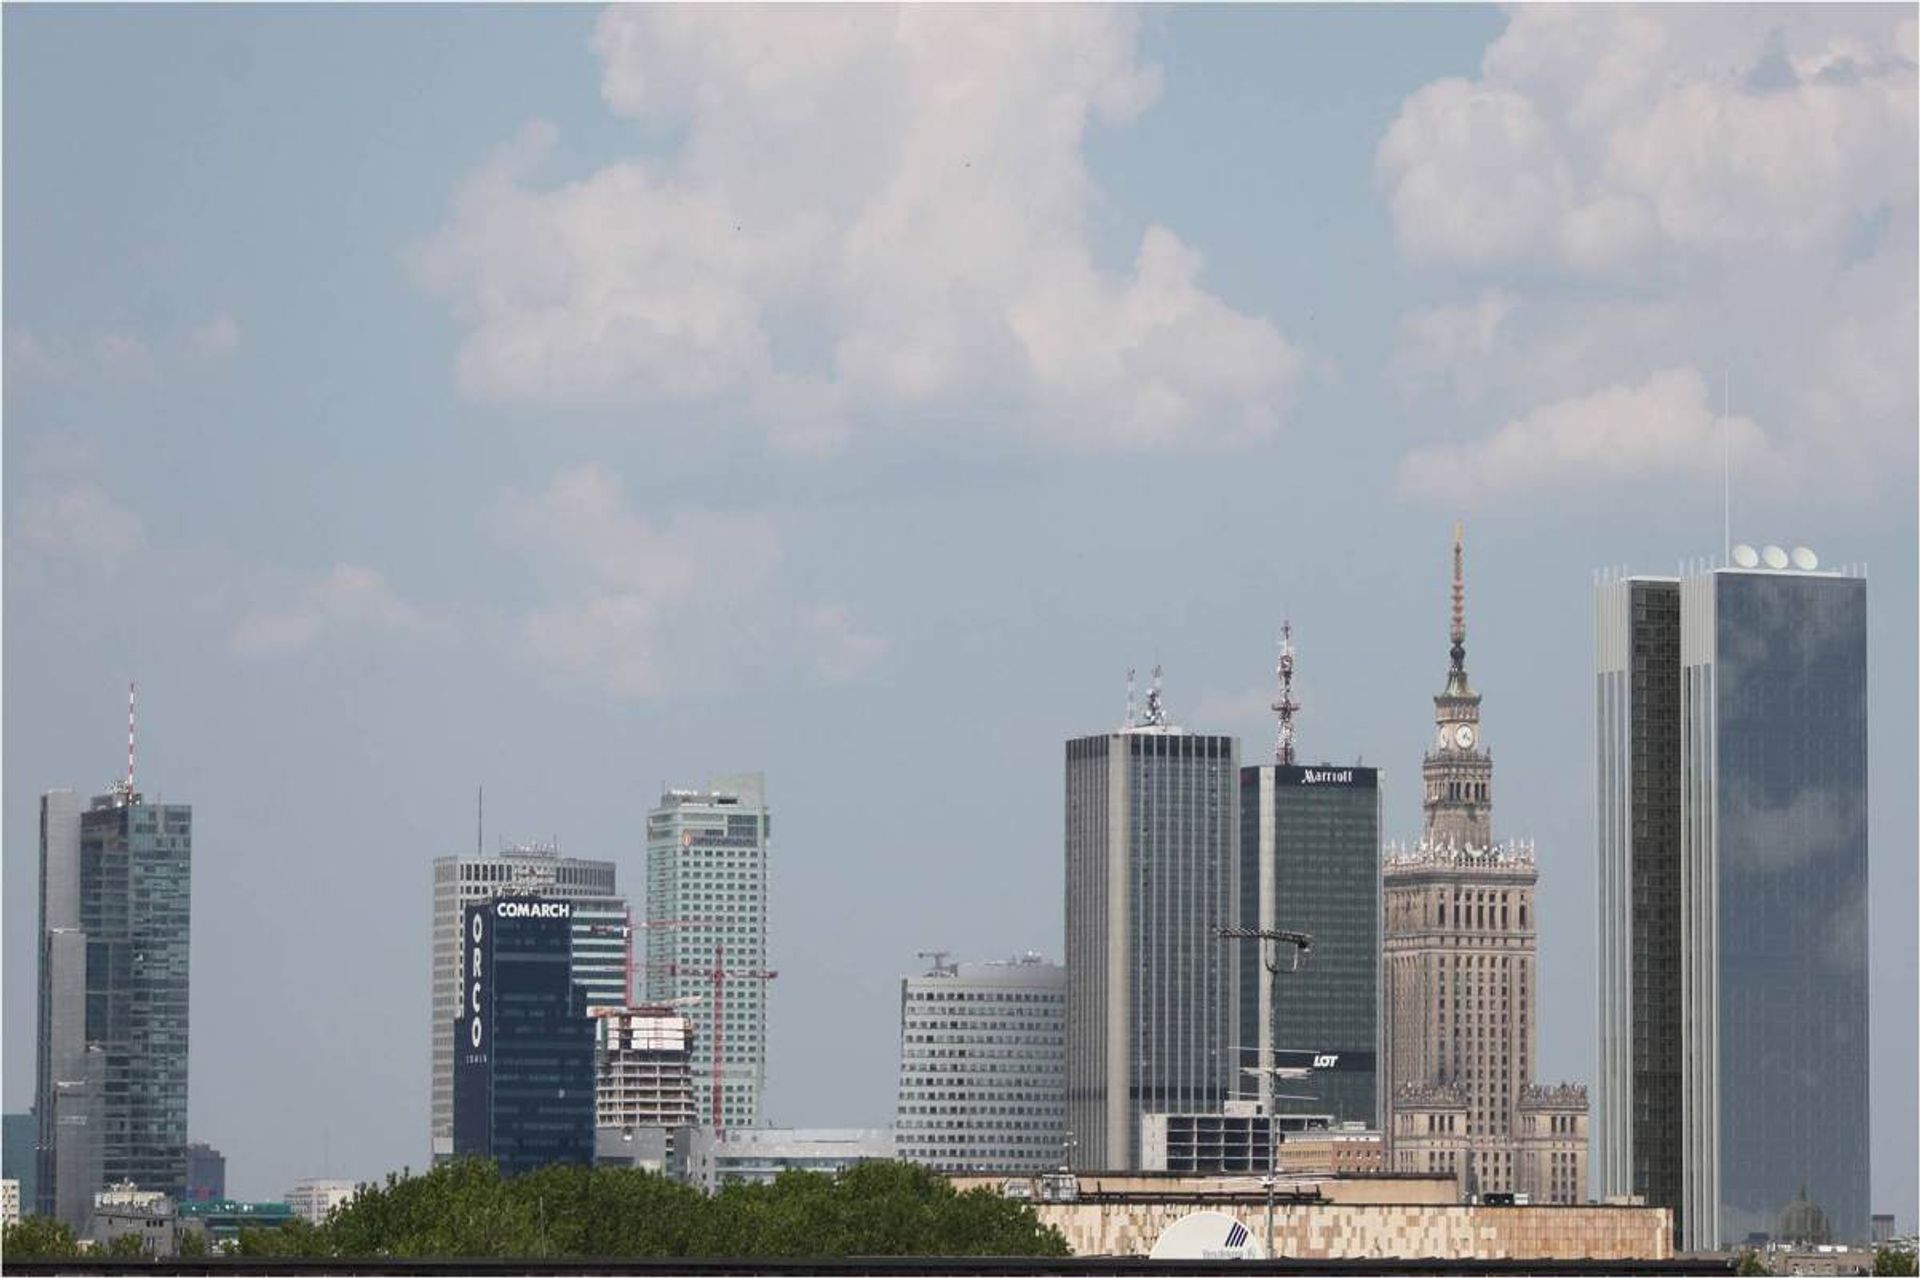  Rozwój nowych inwestycji w Warszawie nabiera tempa, w miarę jak centrum miasta przesuwa się na zachód